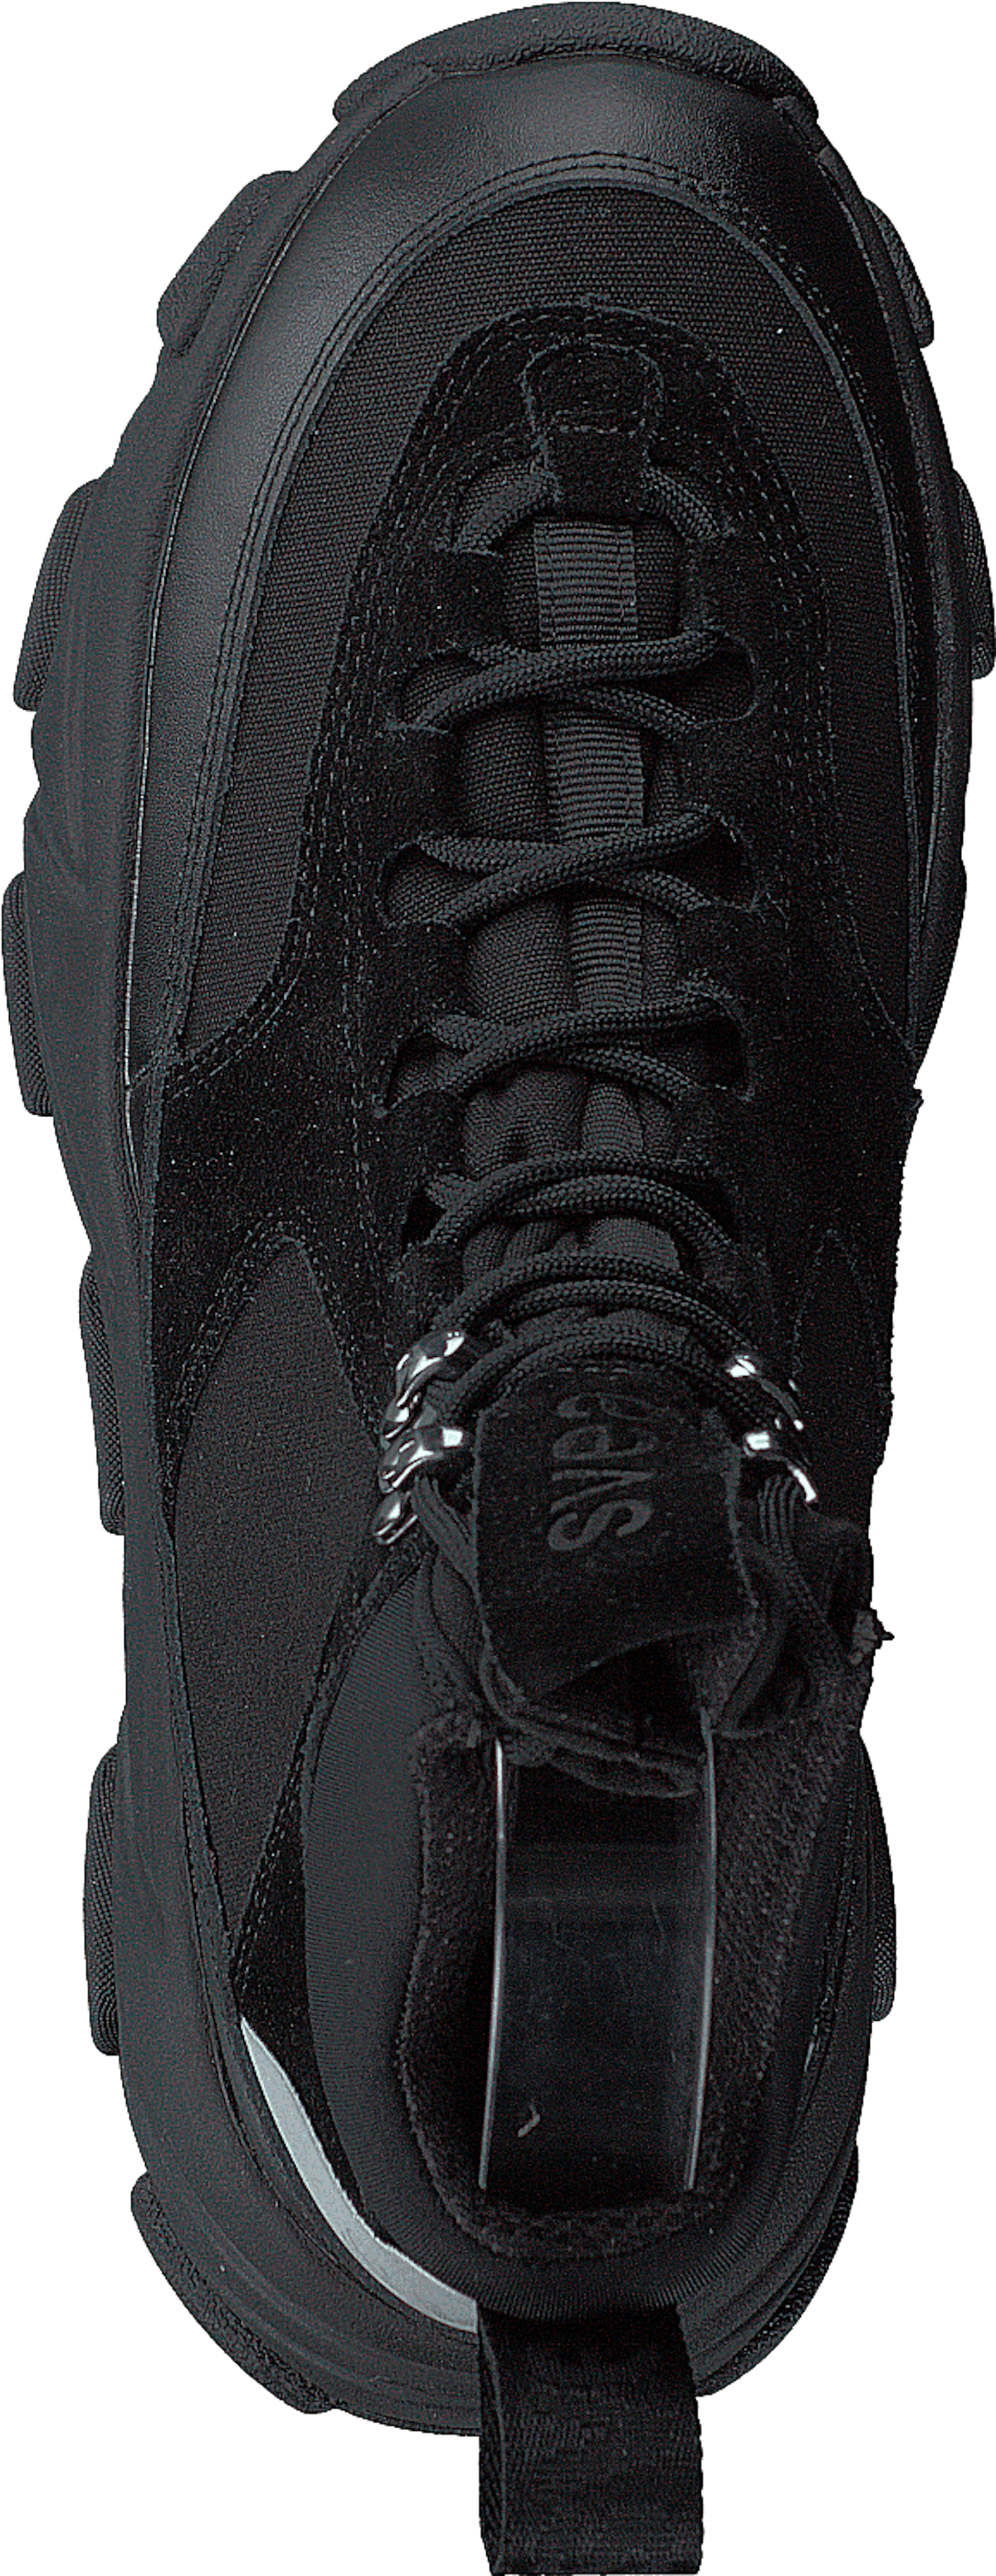 Fire Sneaker Boots Black